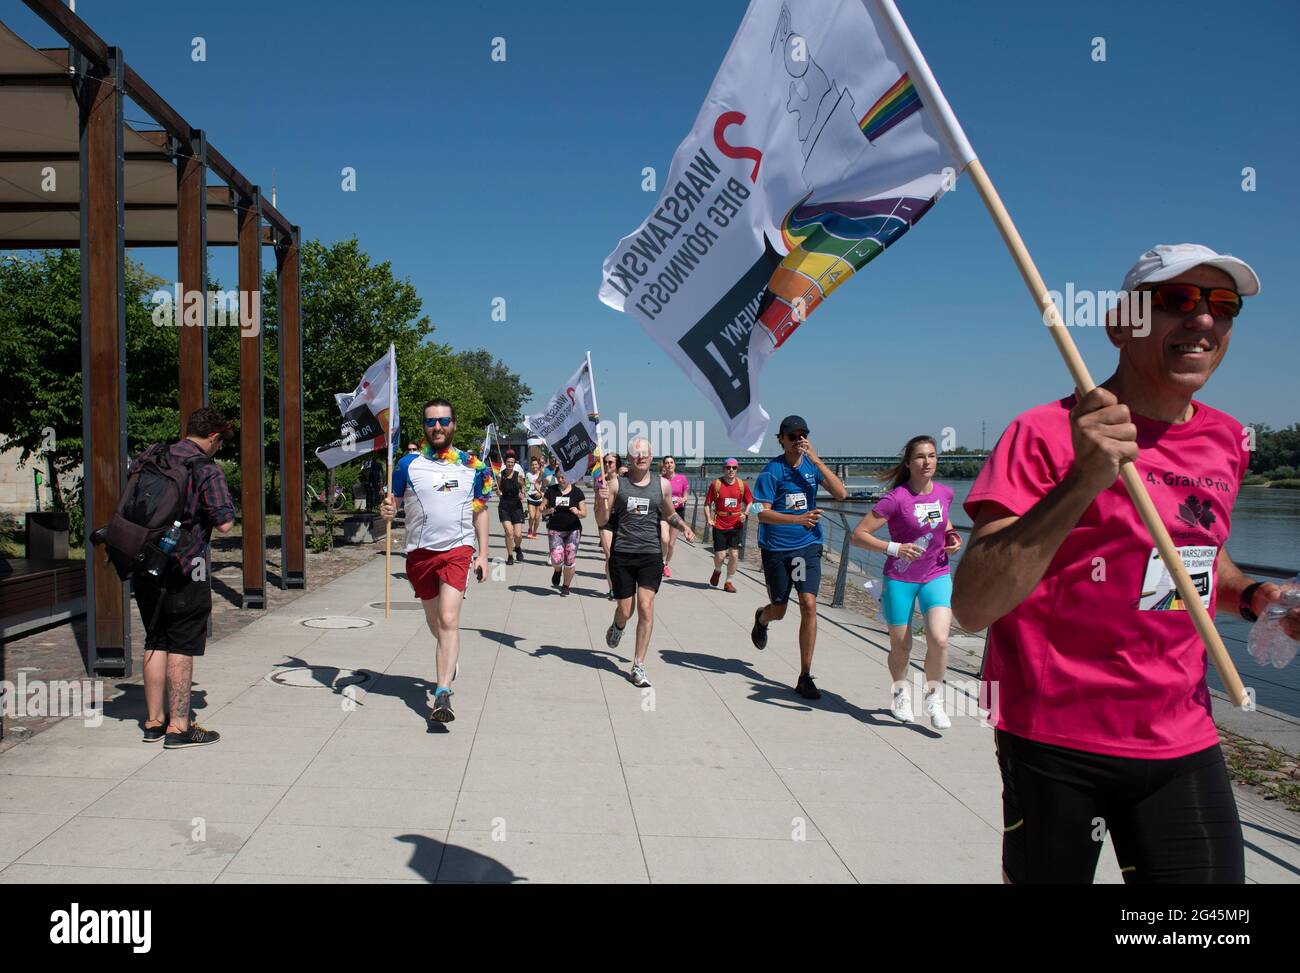 Varsovia, Varsovia, Polonia. 19th de junio de 2021. Los participantes del Equidad Jog tienen banderas mientras se ejecutan el 19 de junio de 2021 en Varsovia, Polonia. Una docena de personas participaron en el Jog de Igualdad 2nd, organizado por el grupo activista Homokomando, que consiste en una ruta de 5 km y tiene lugar antes del Desfile del Orgullo de Varsovia. Crédito: Aleksander Kalka/ZUMA Wire/Alamy Live News Foto de stock